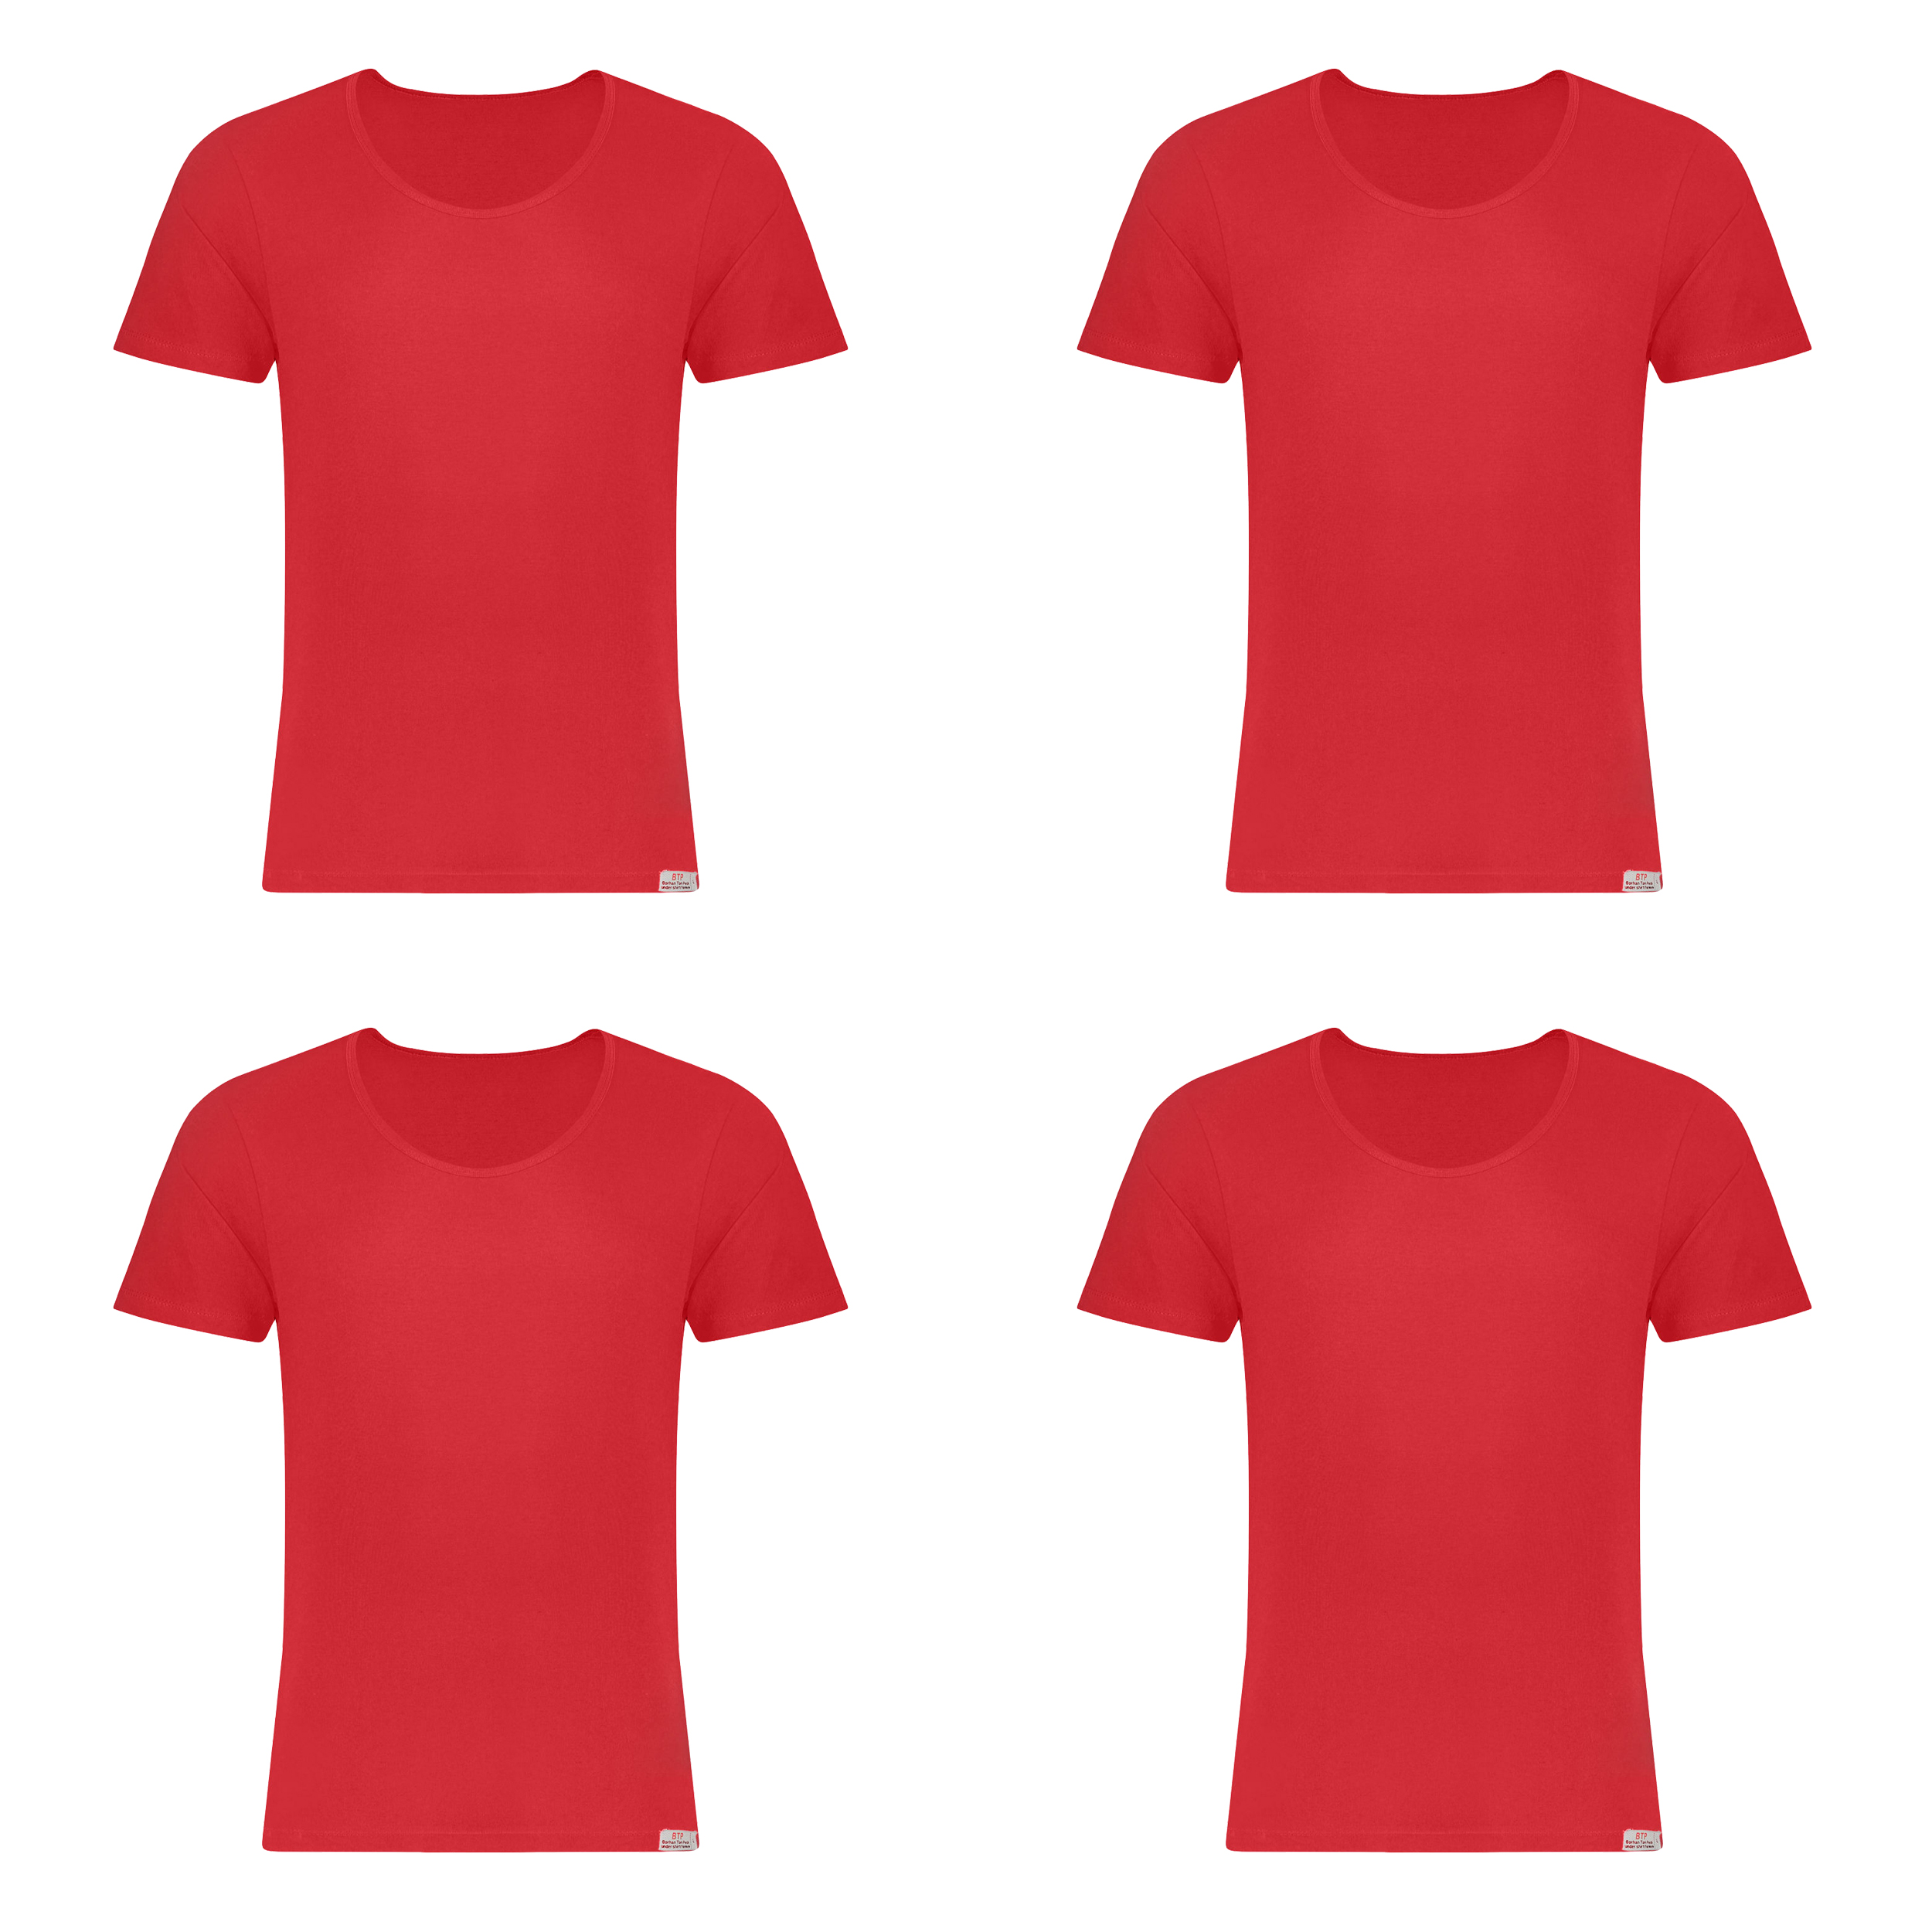 زیرپوش آستین دار مردانه برهان تن پوش مدل 2-02  رنگ قرمز بسته 4 عددی -  - 1